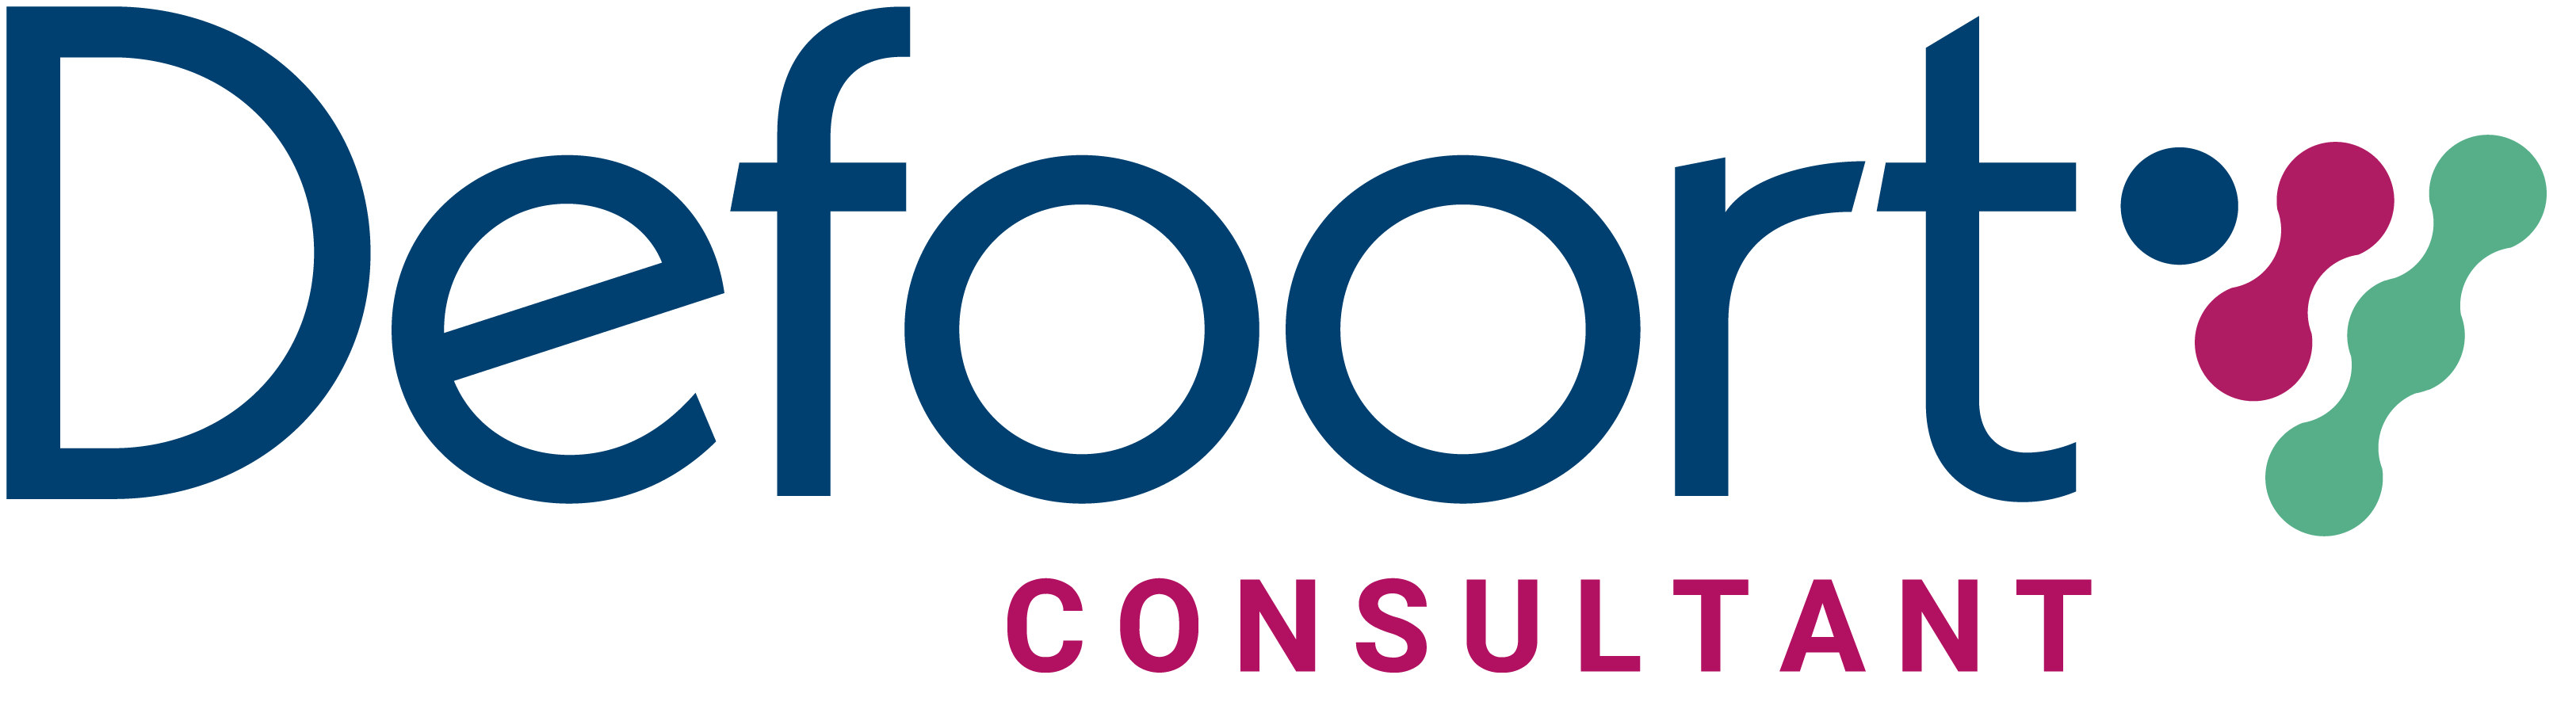 defoort-consultant-logo-with-tagline-full-colour-rgb